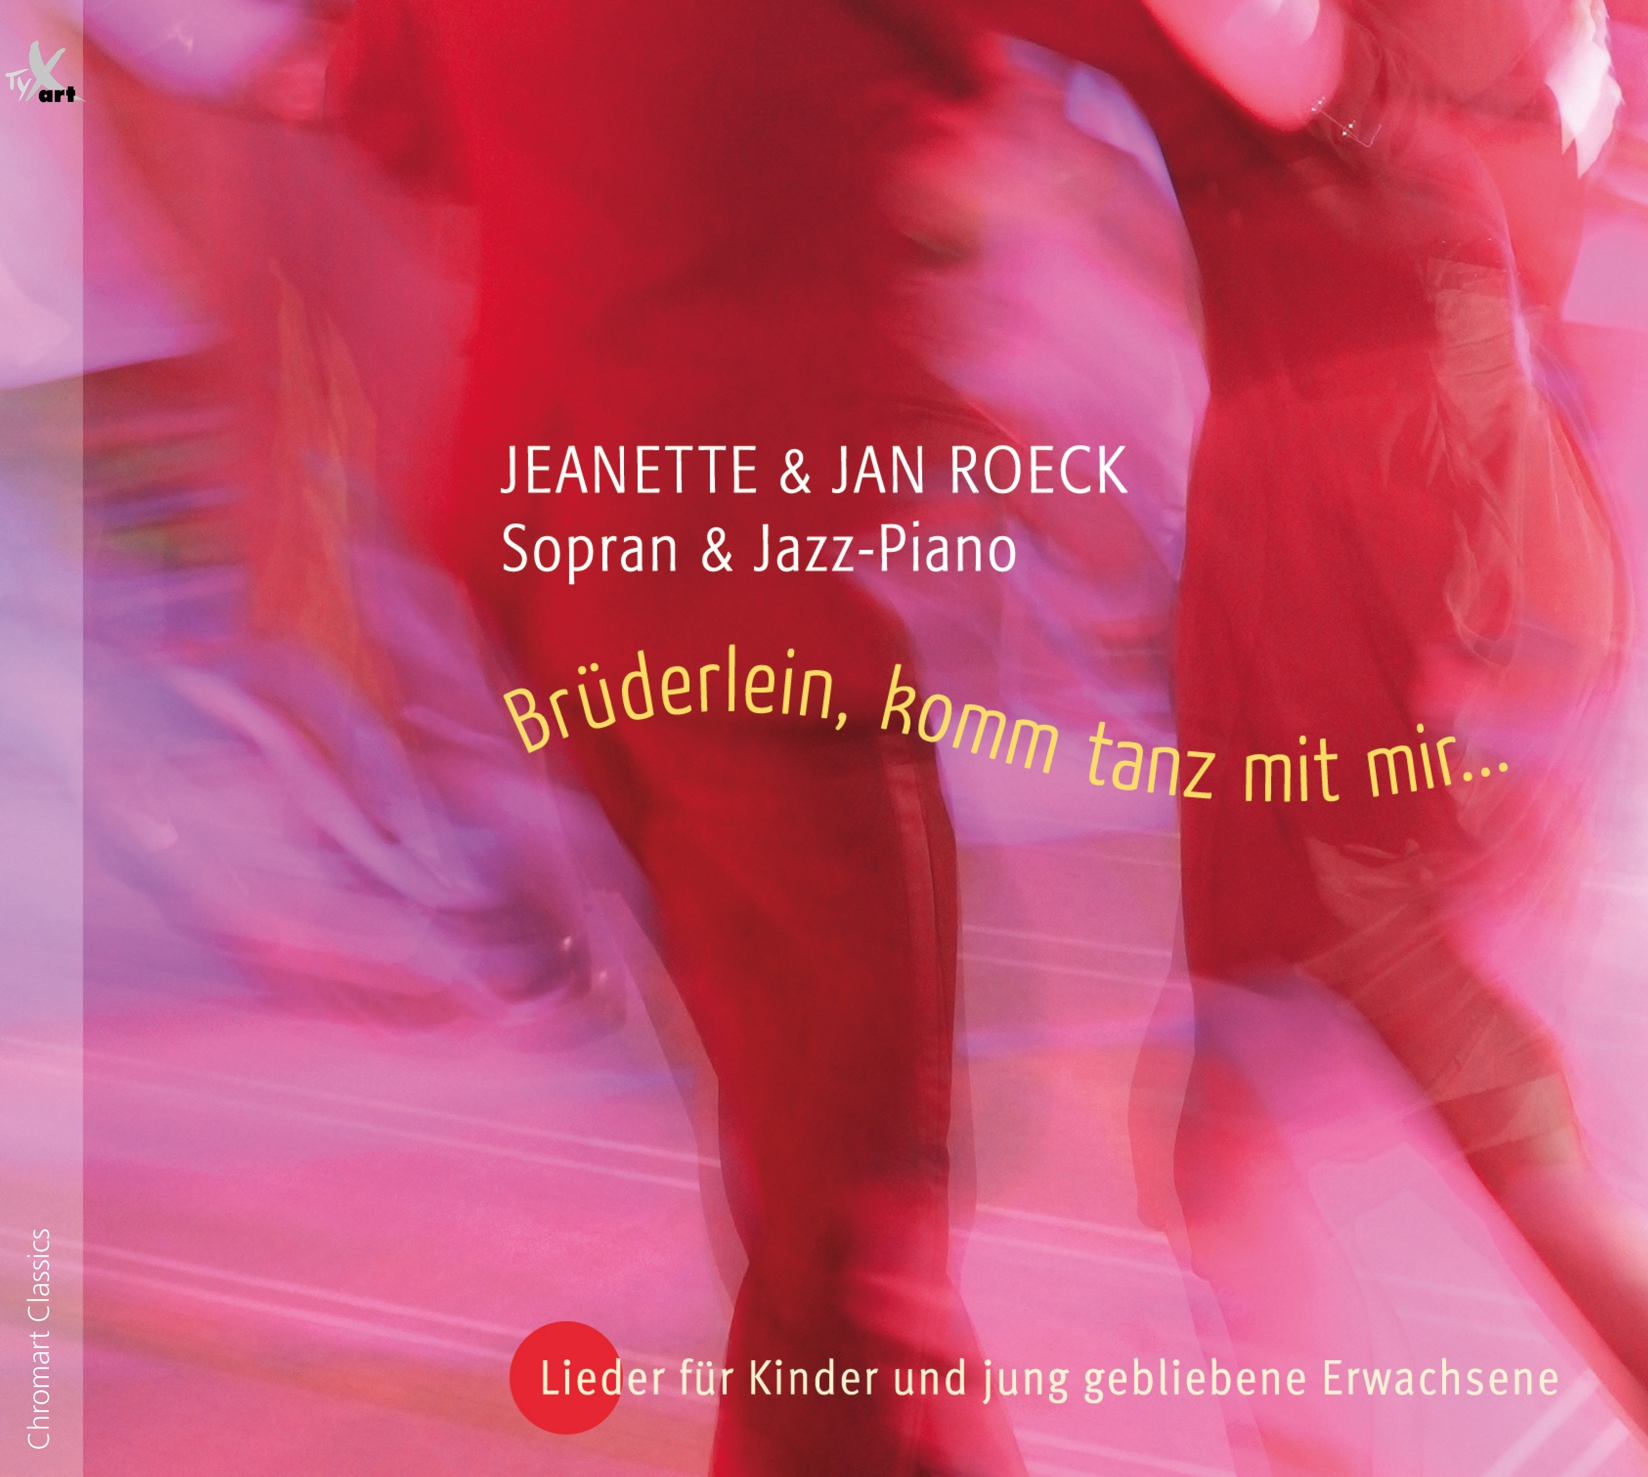 Brüderlein, komm tanz mit mir - Little brother dance with me - Roeck